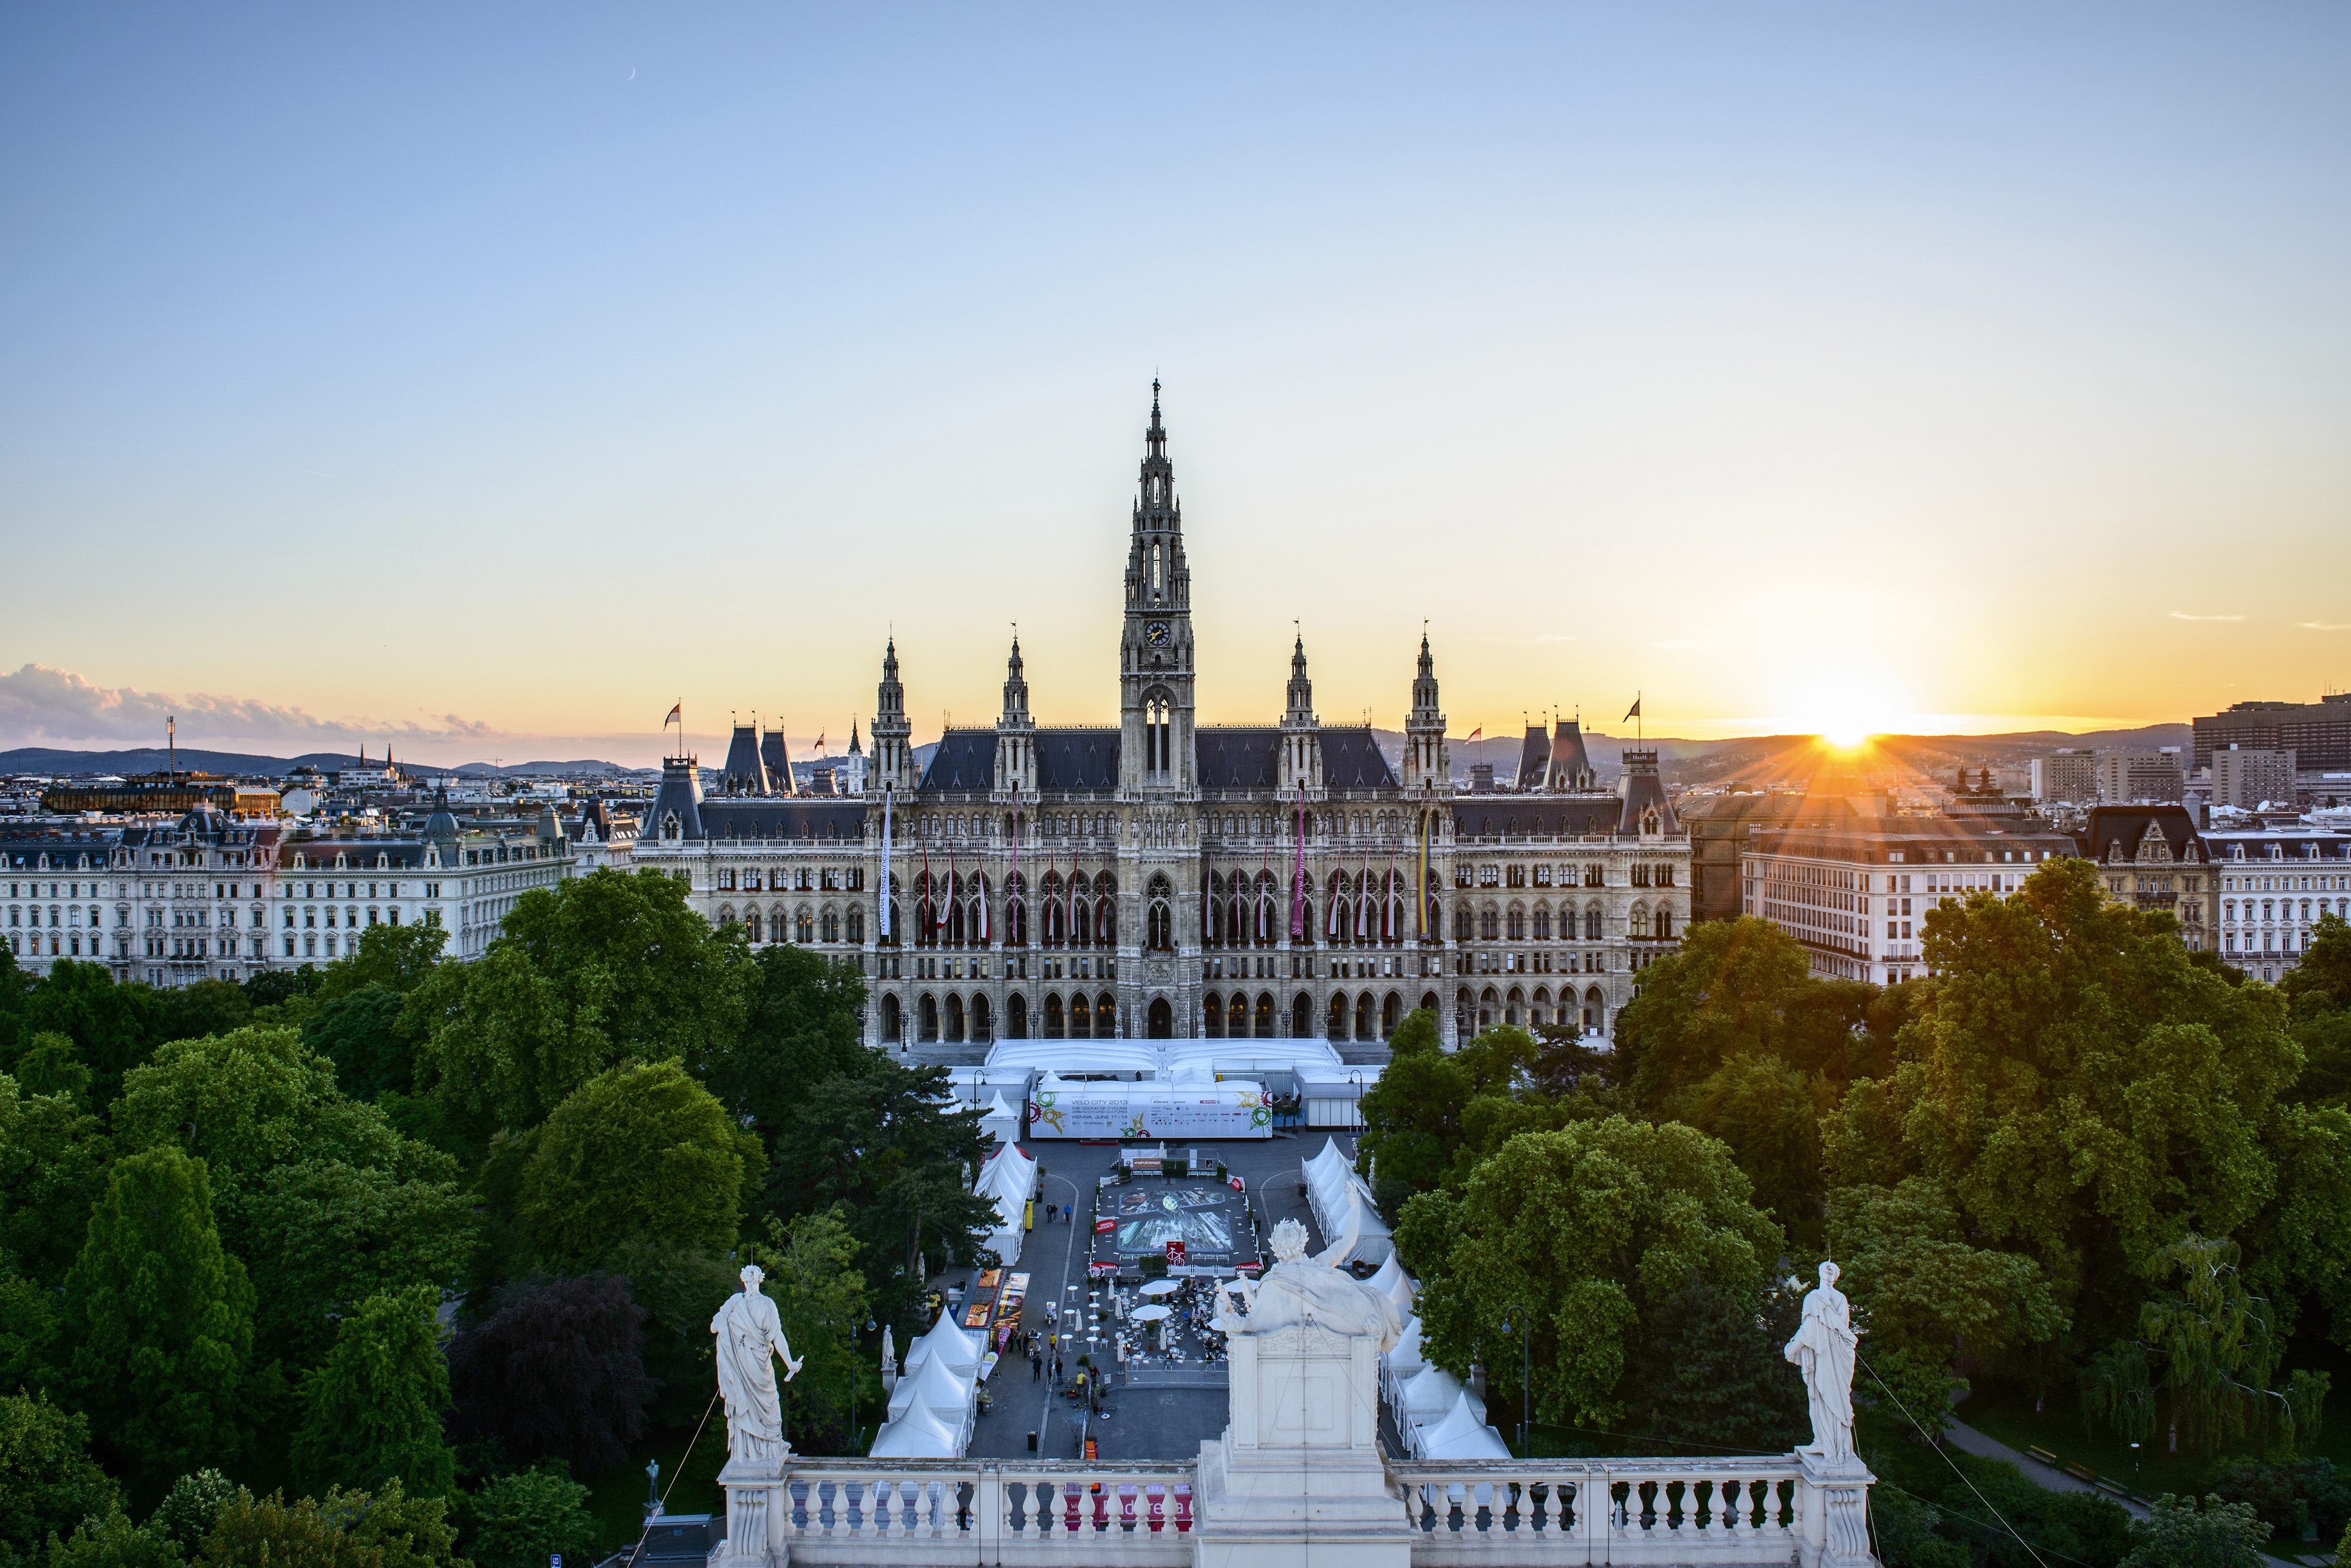 Das Wiener Rathaus bei Sonnenuntergang